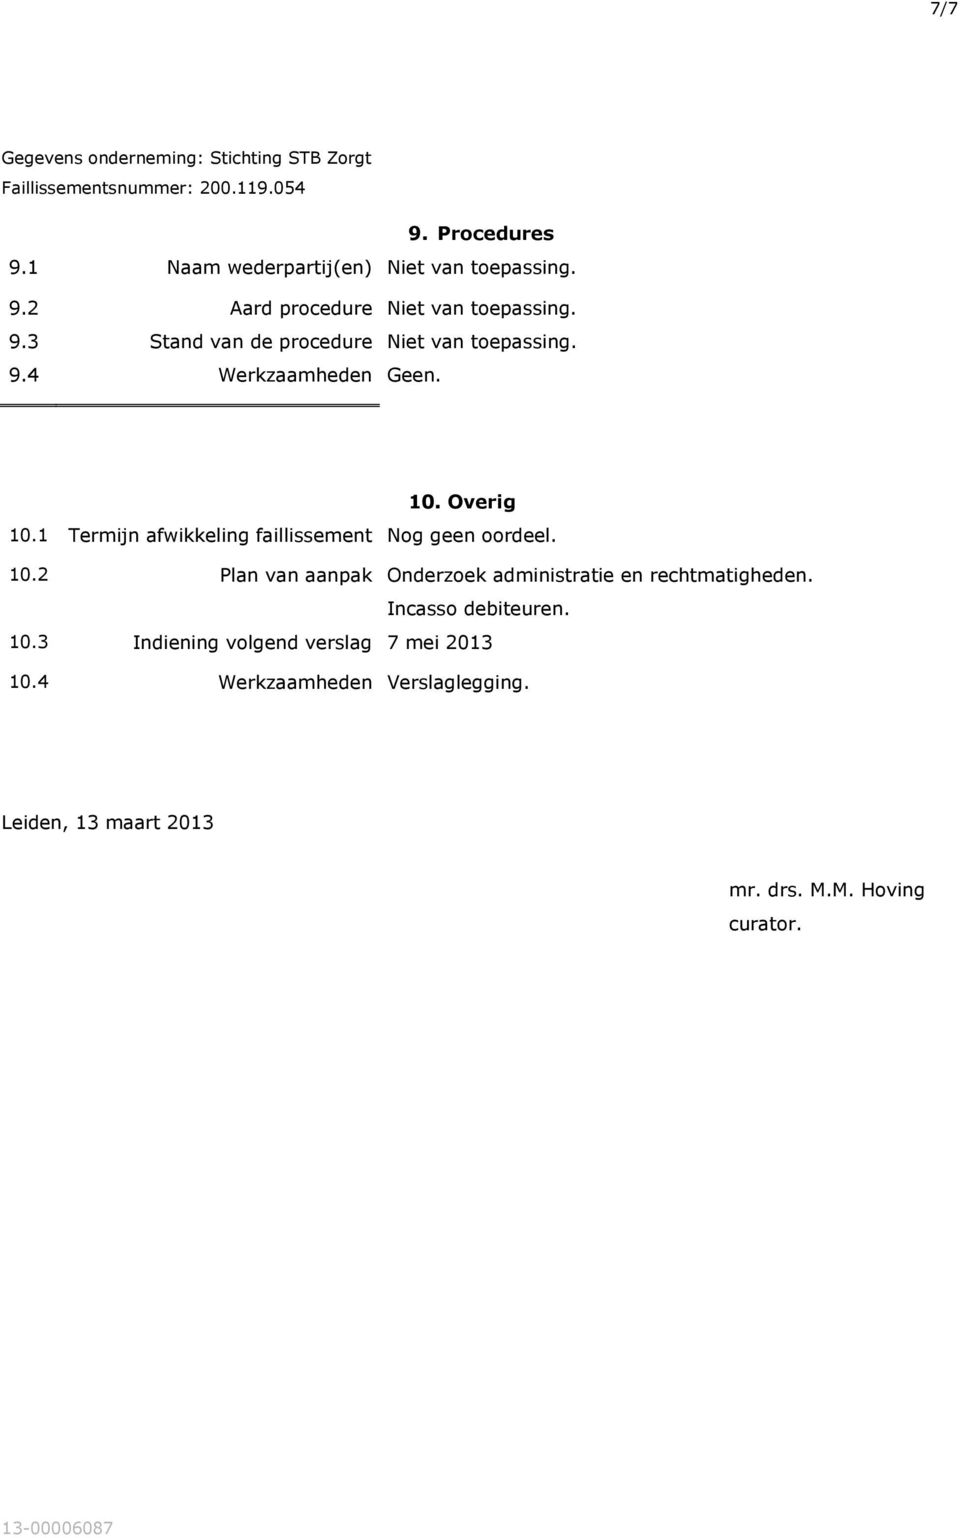 Incasso debiteuren. 10.3 Indiening volgend verslag 7 mei 2013 10.4 Werkzaamheden Verslaglegging.